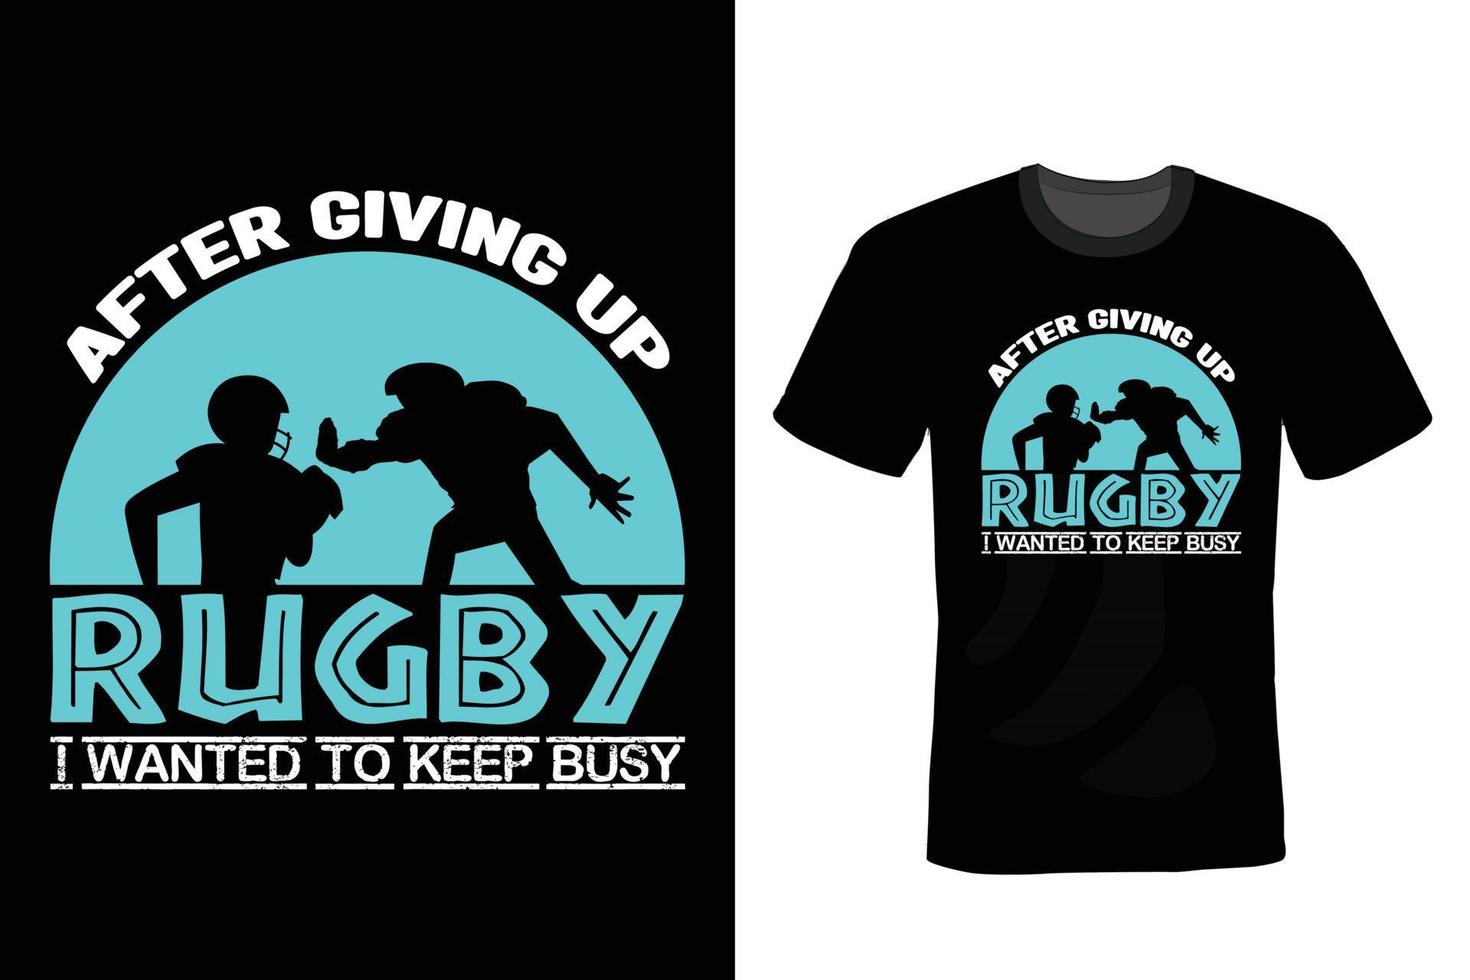 conception de t-shirt de rugby, vintage, typographie vecteur